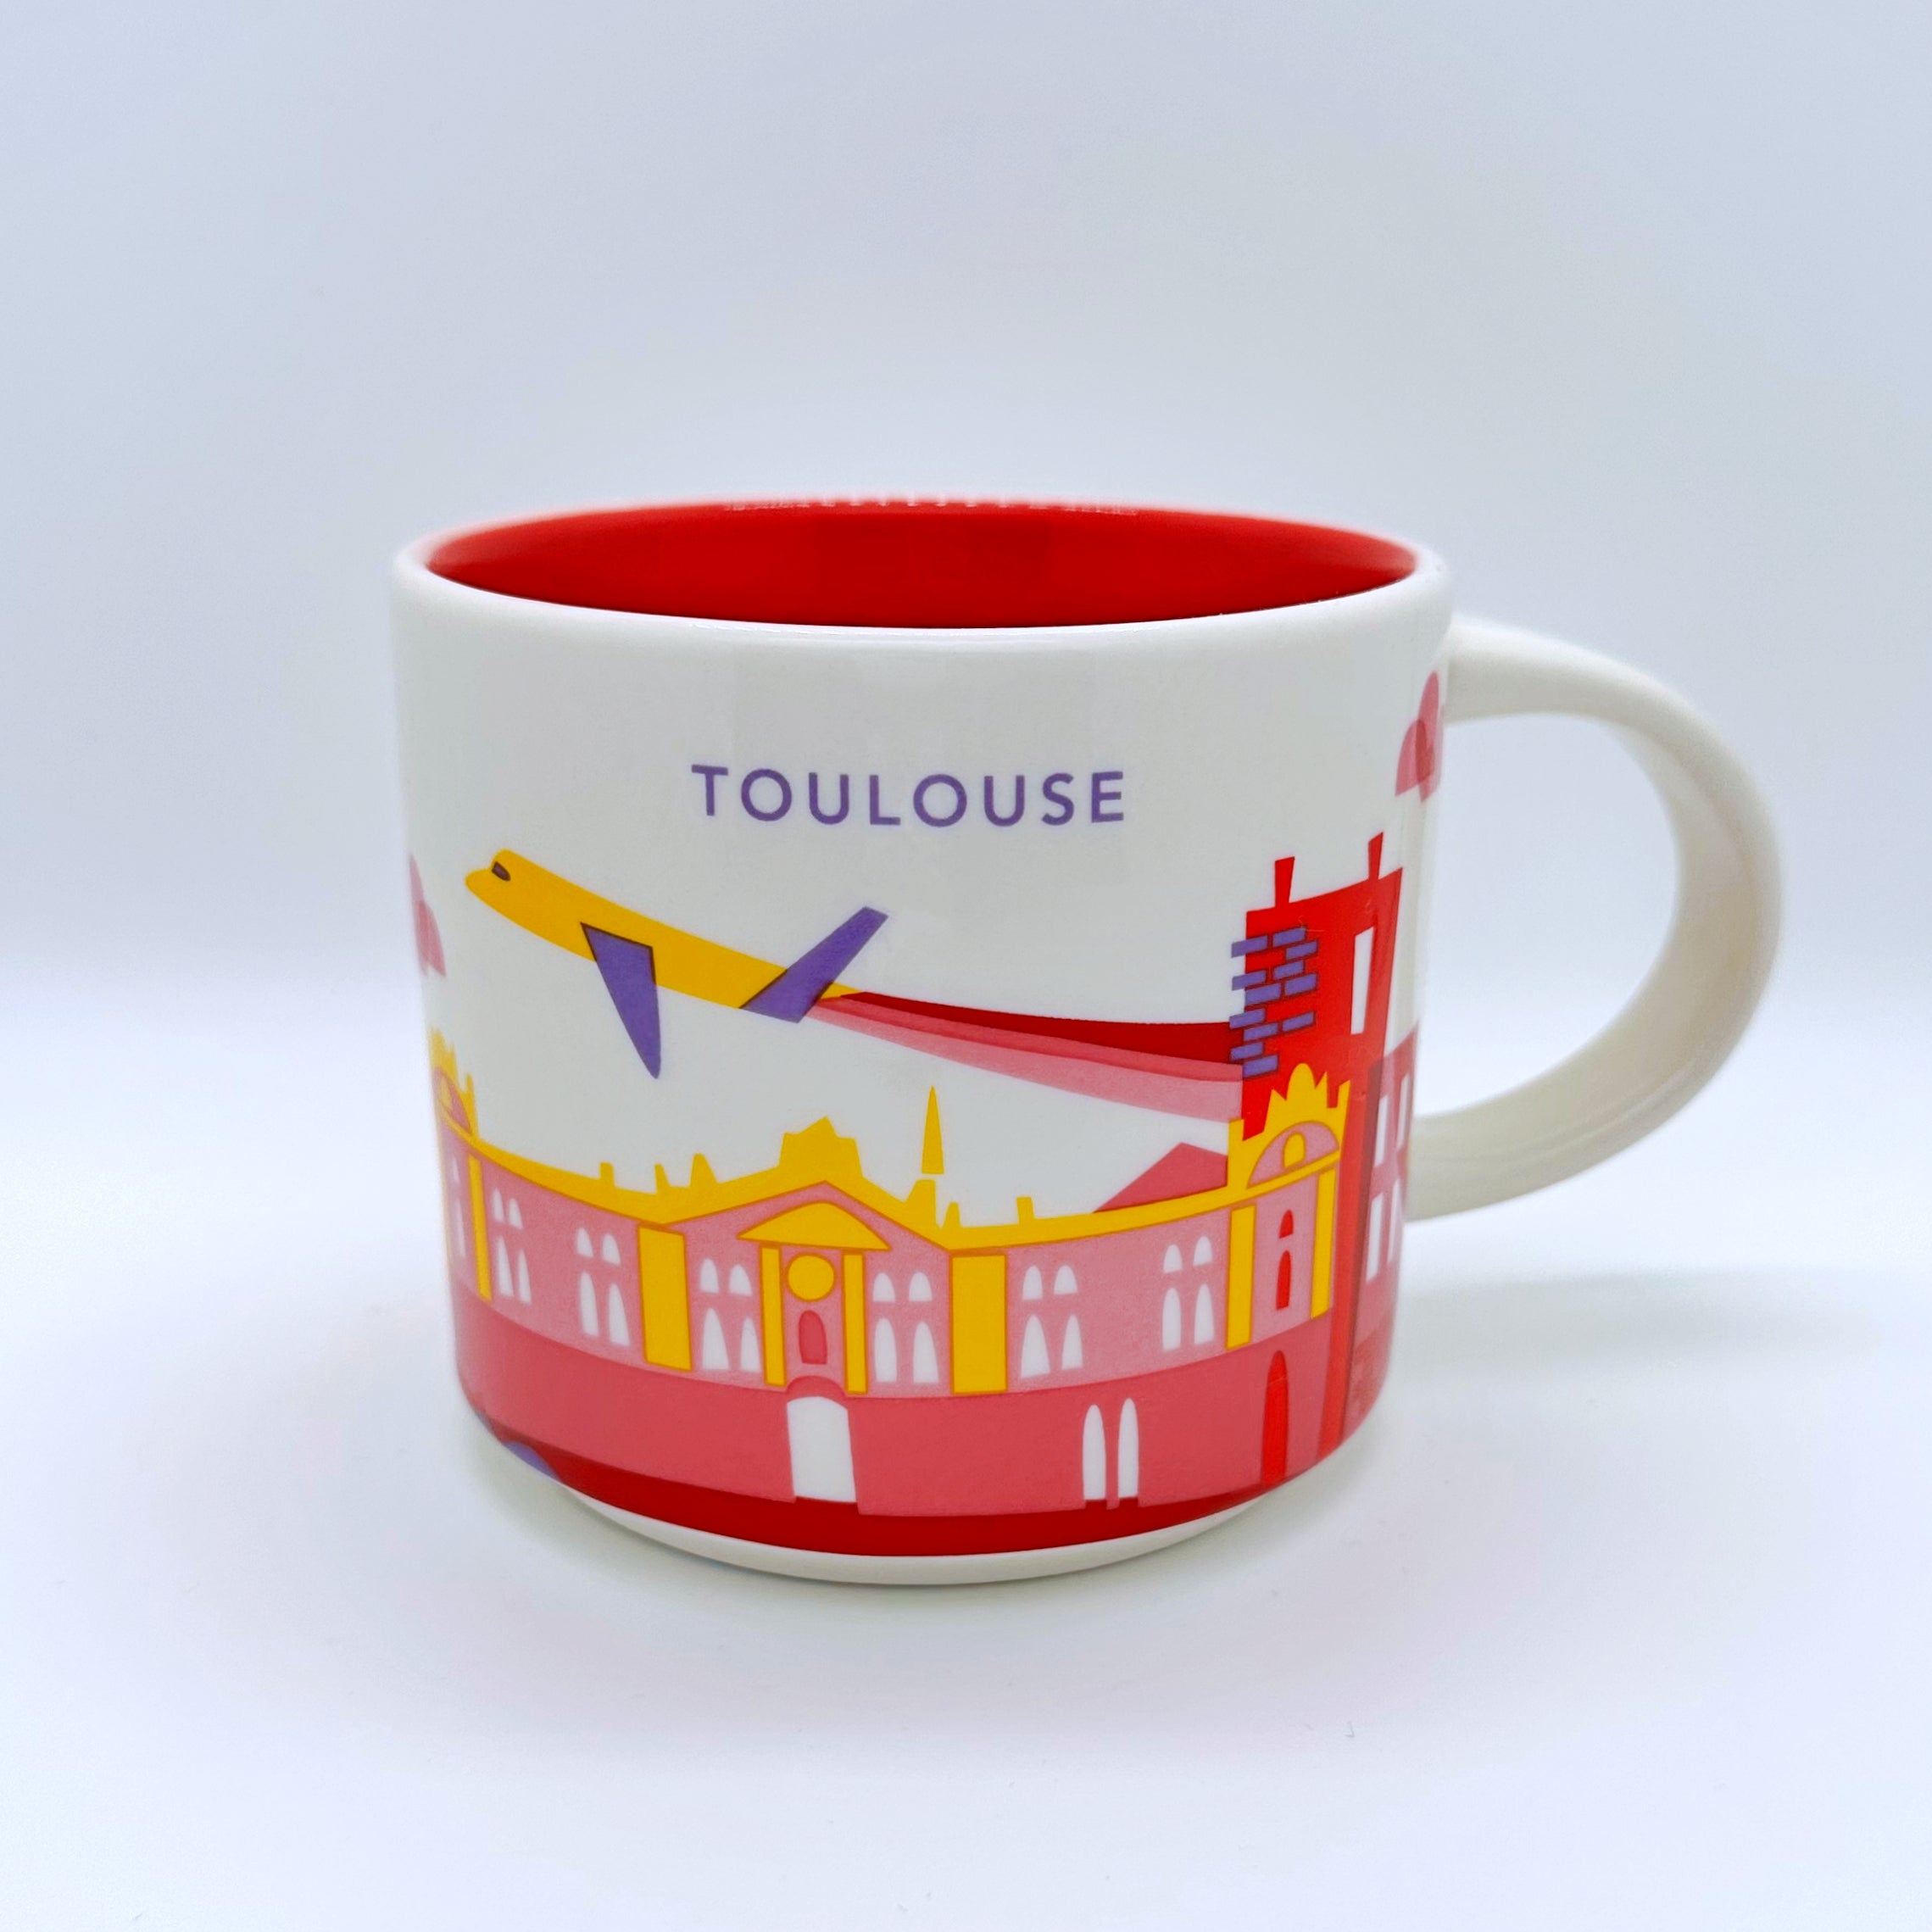 Kaffee Tee und Cappuccino Tasse von Starbucks mit gemalten Bildern aus der Stadt Toulouse